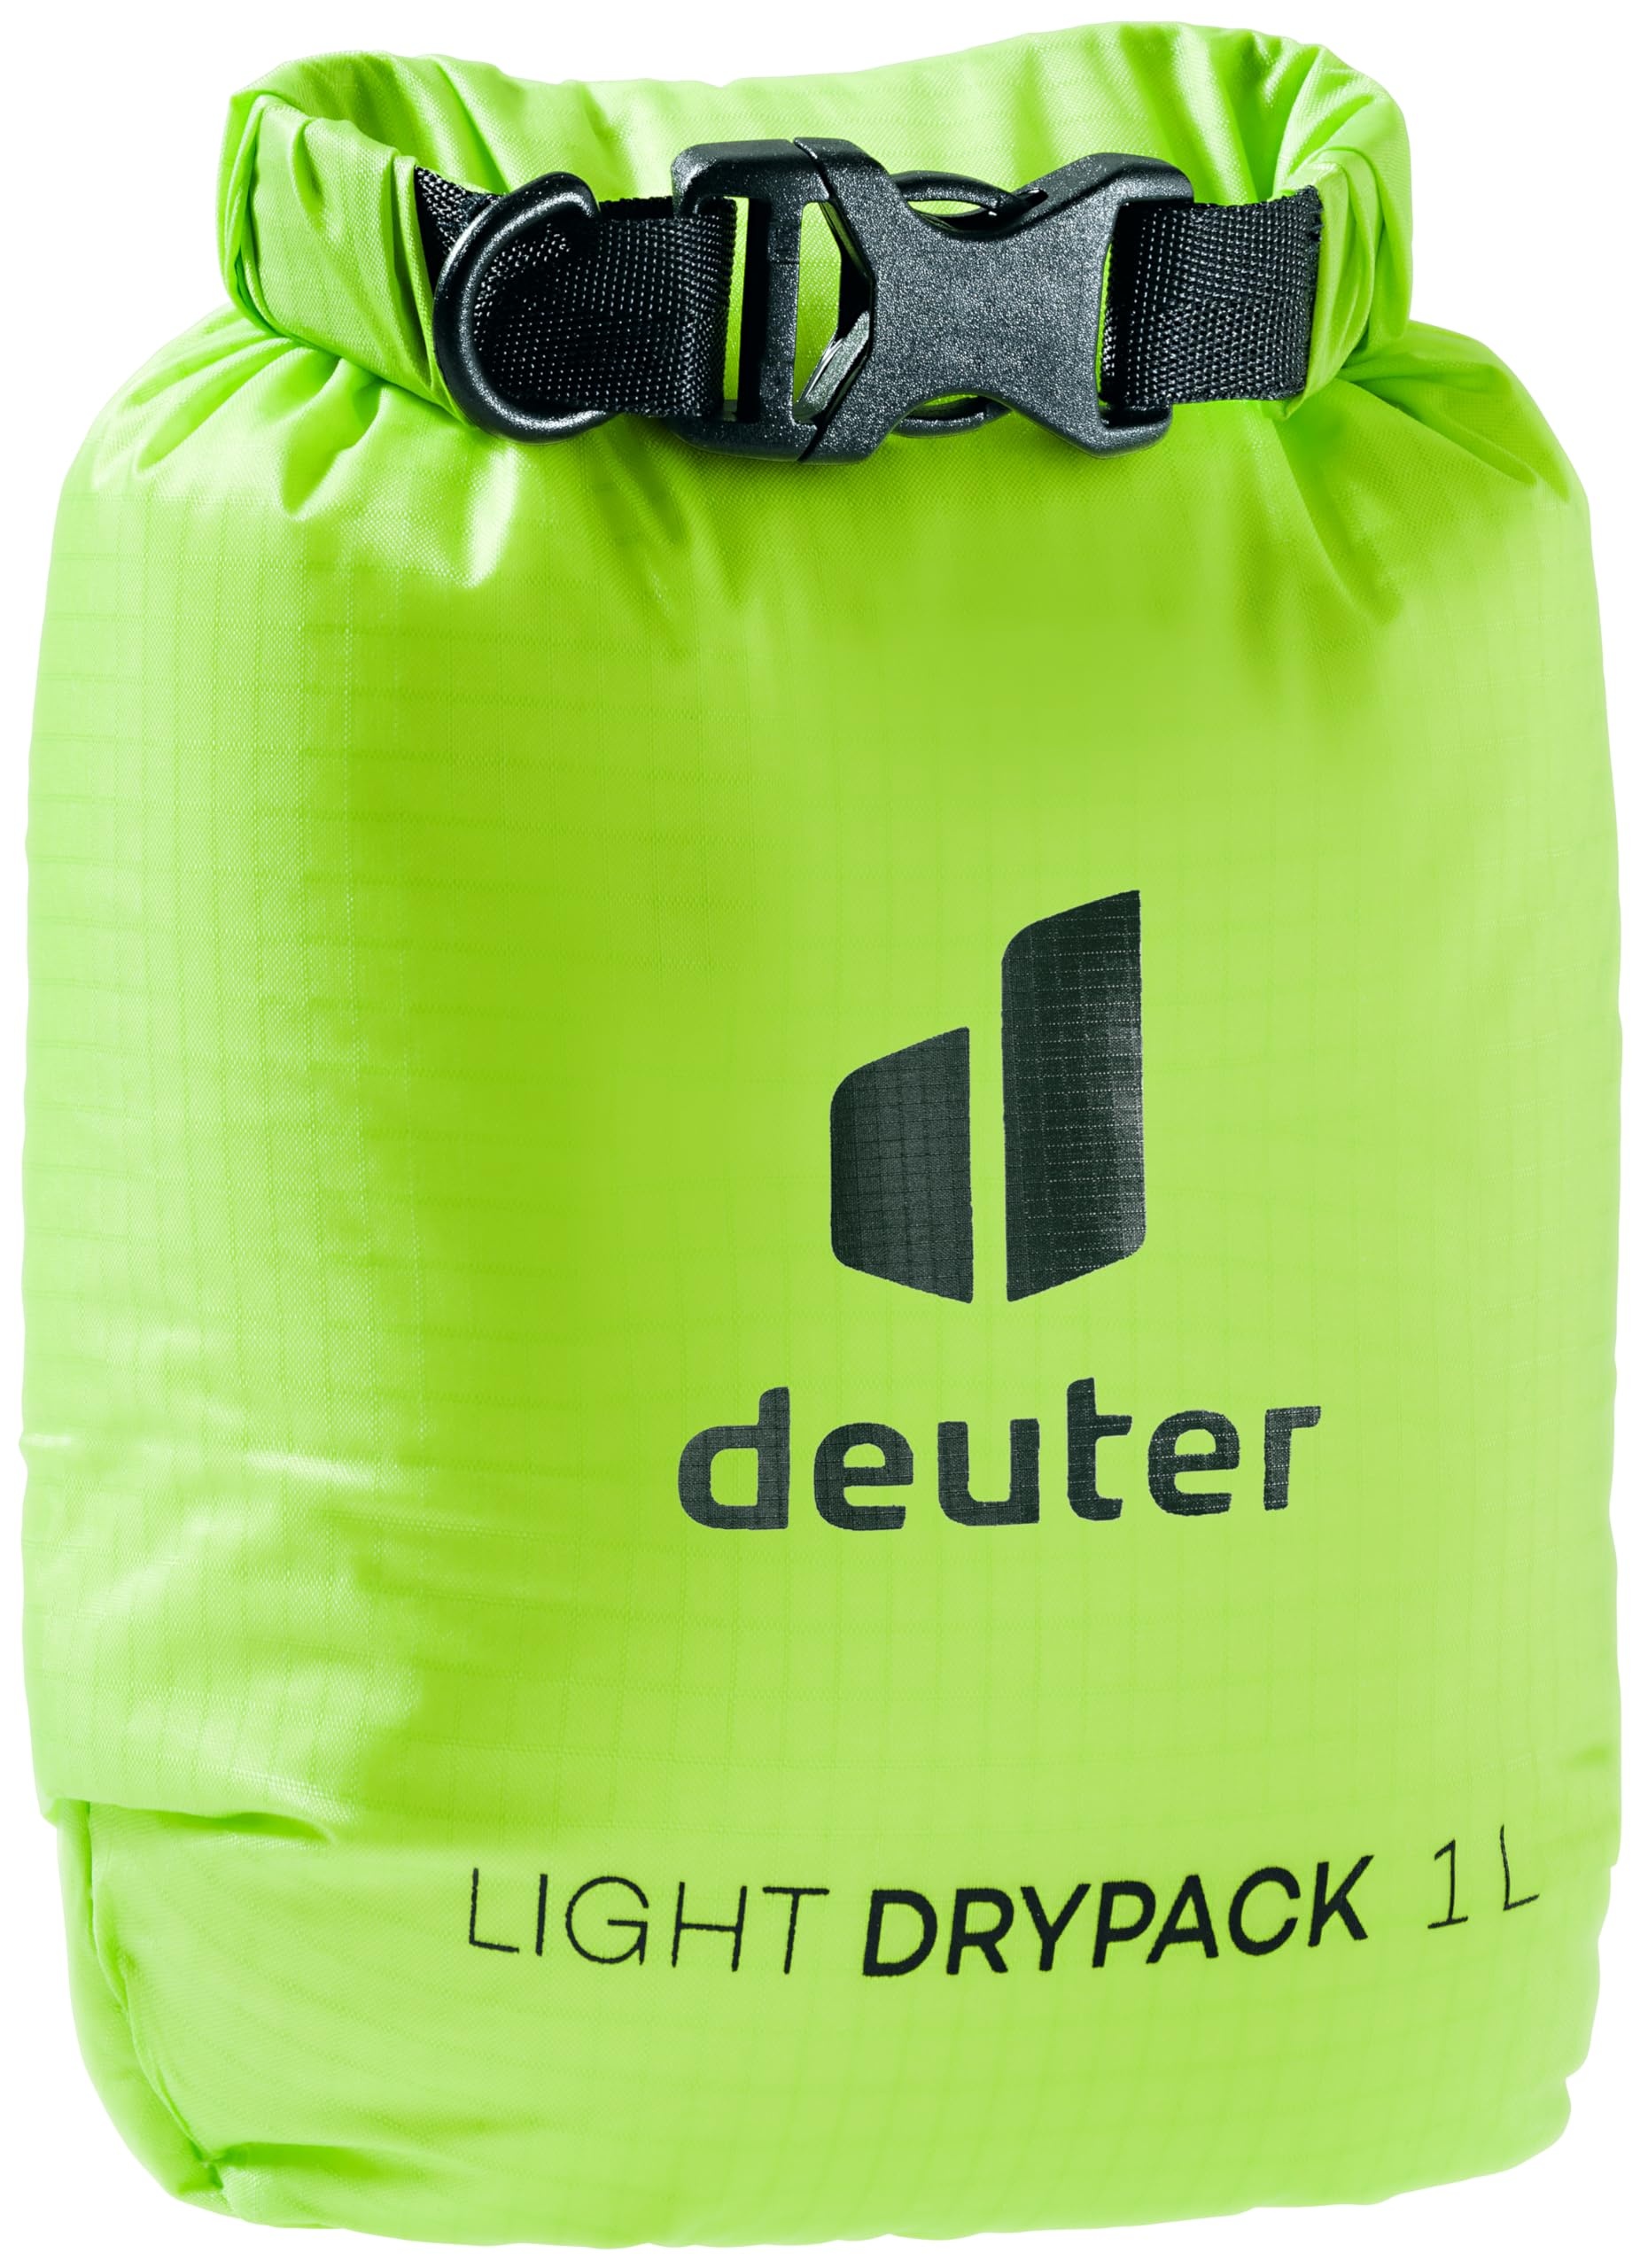 deuter light drypack